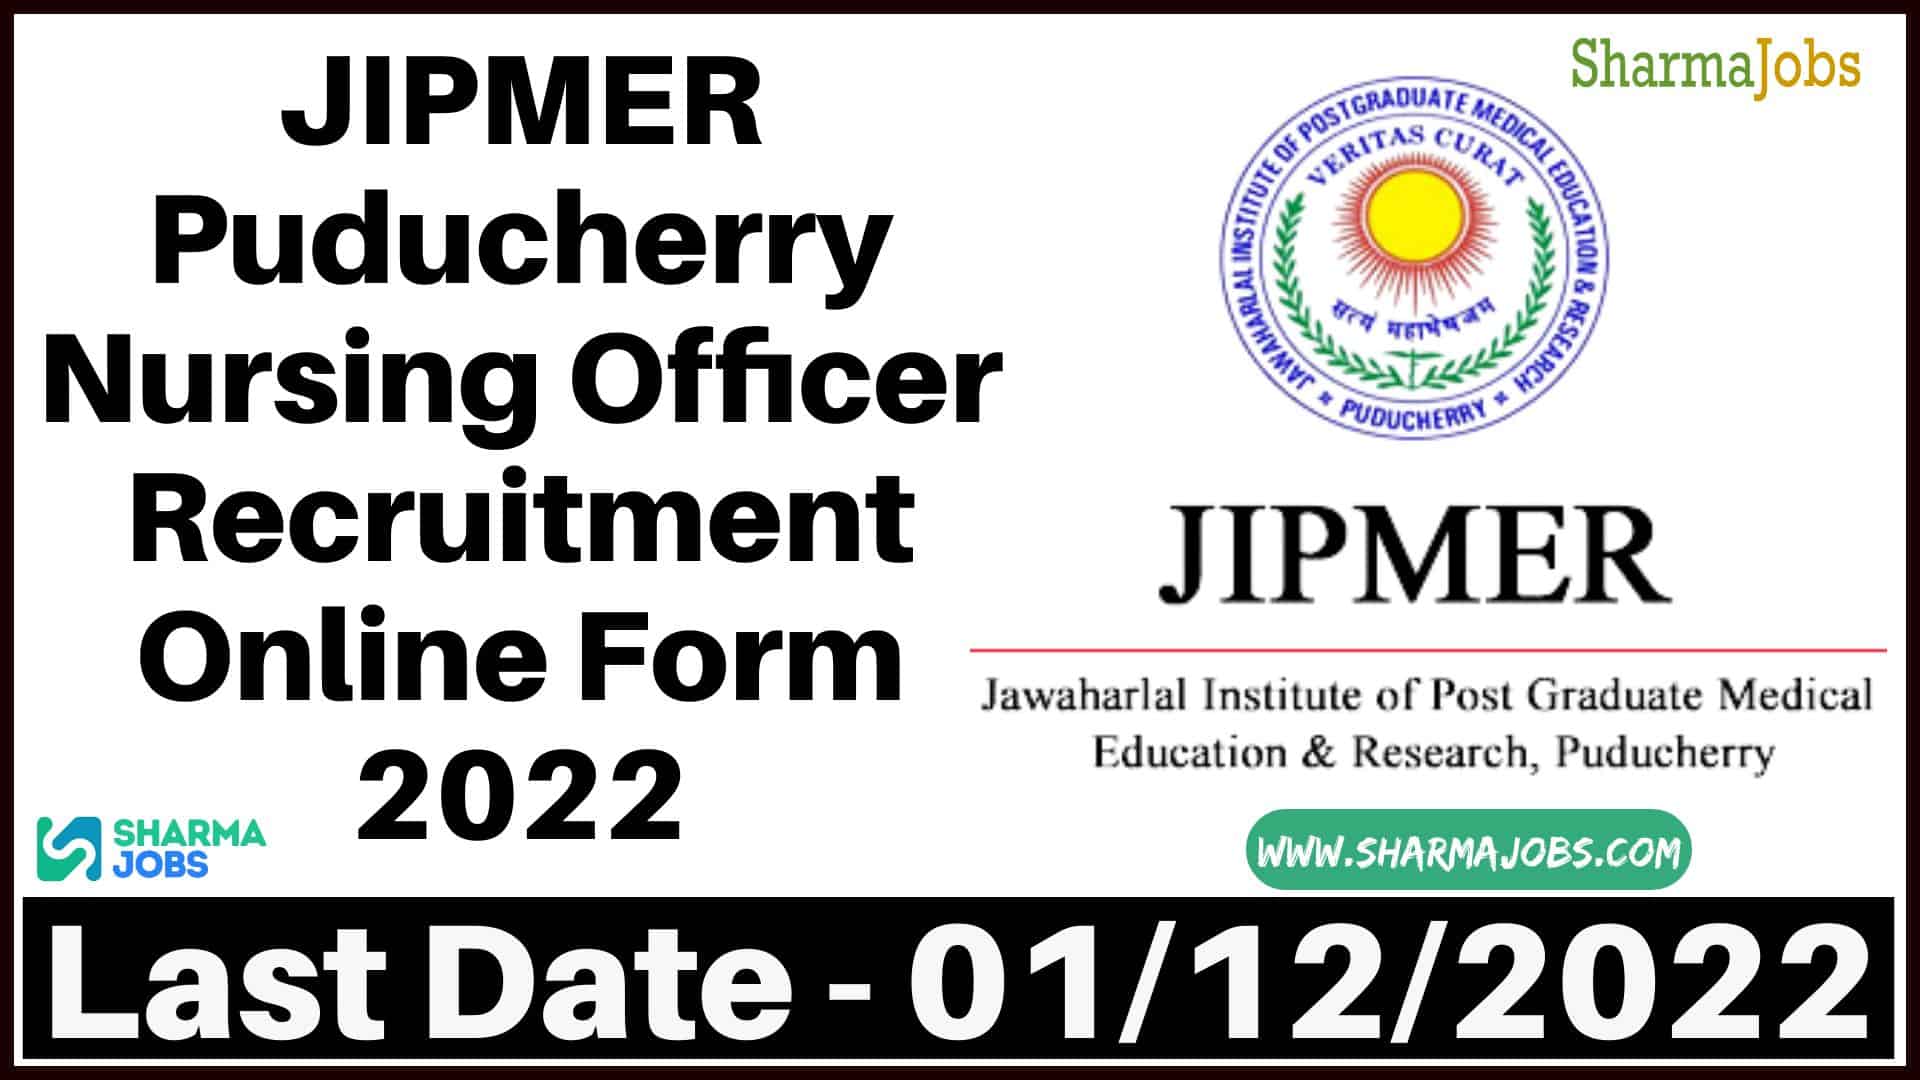 JIPMER Puducherry Nursing Officer Recruitment Online Form 2022 30